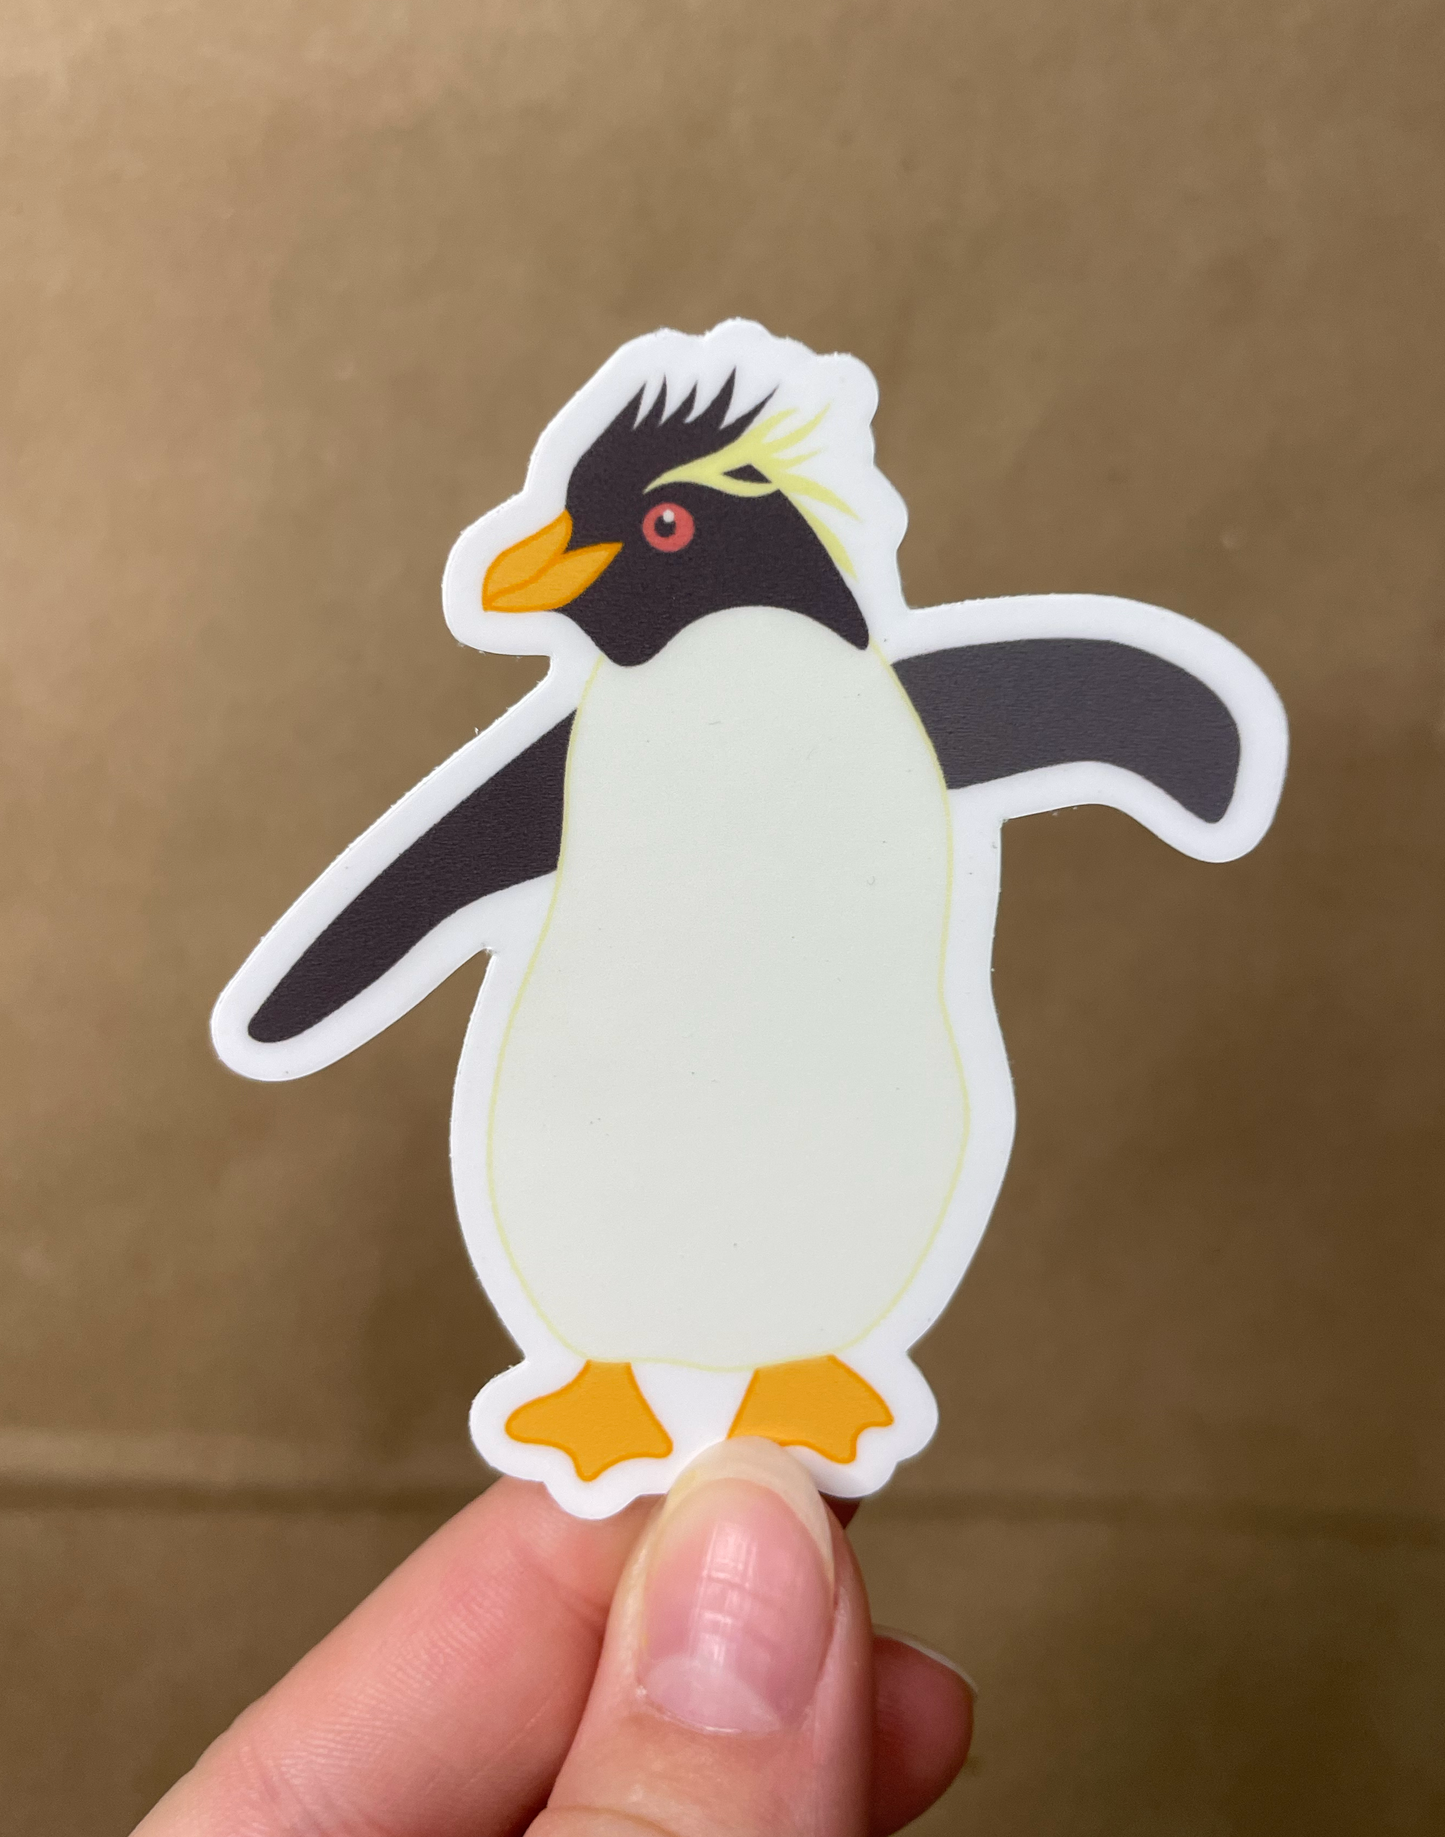 Rockhopper Penguin Sticker 2